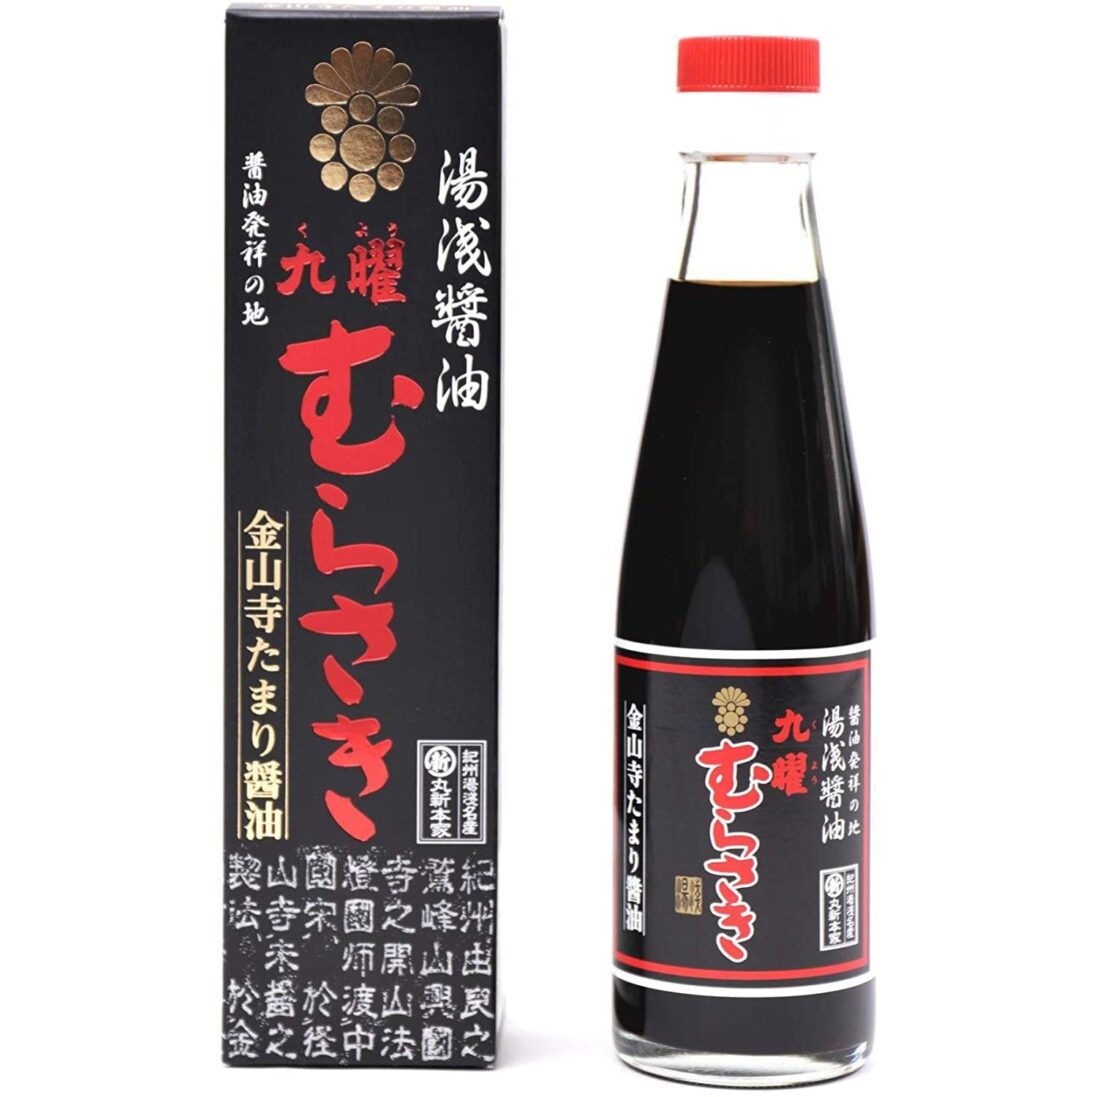 Yuasa-Kuyo-Murasaki-Shoyu-Japanese-Tamari-Soy-Sauce-200ml-Japanese-Taste_2048x.jpg